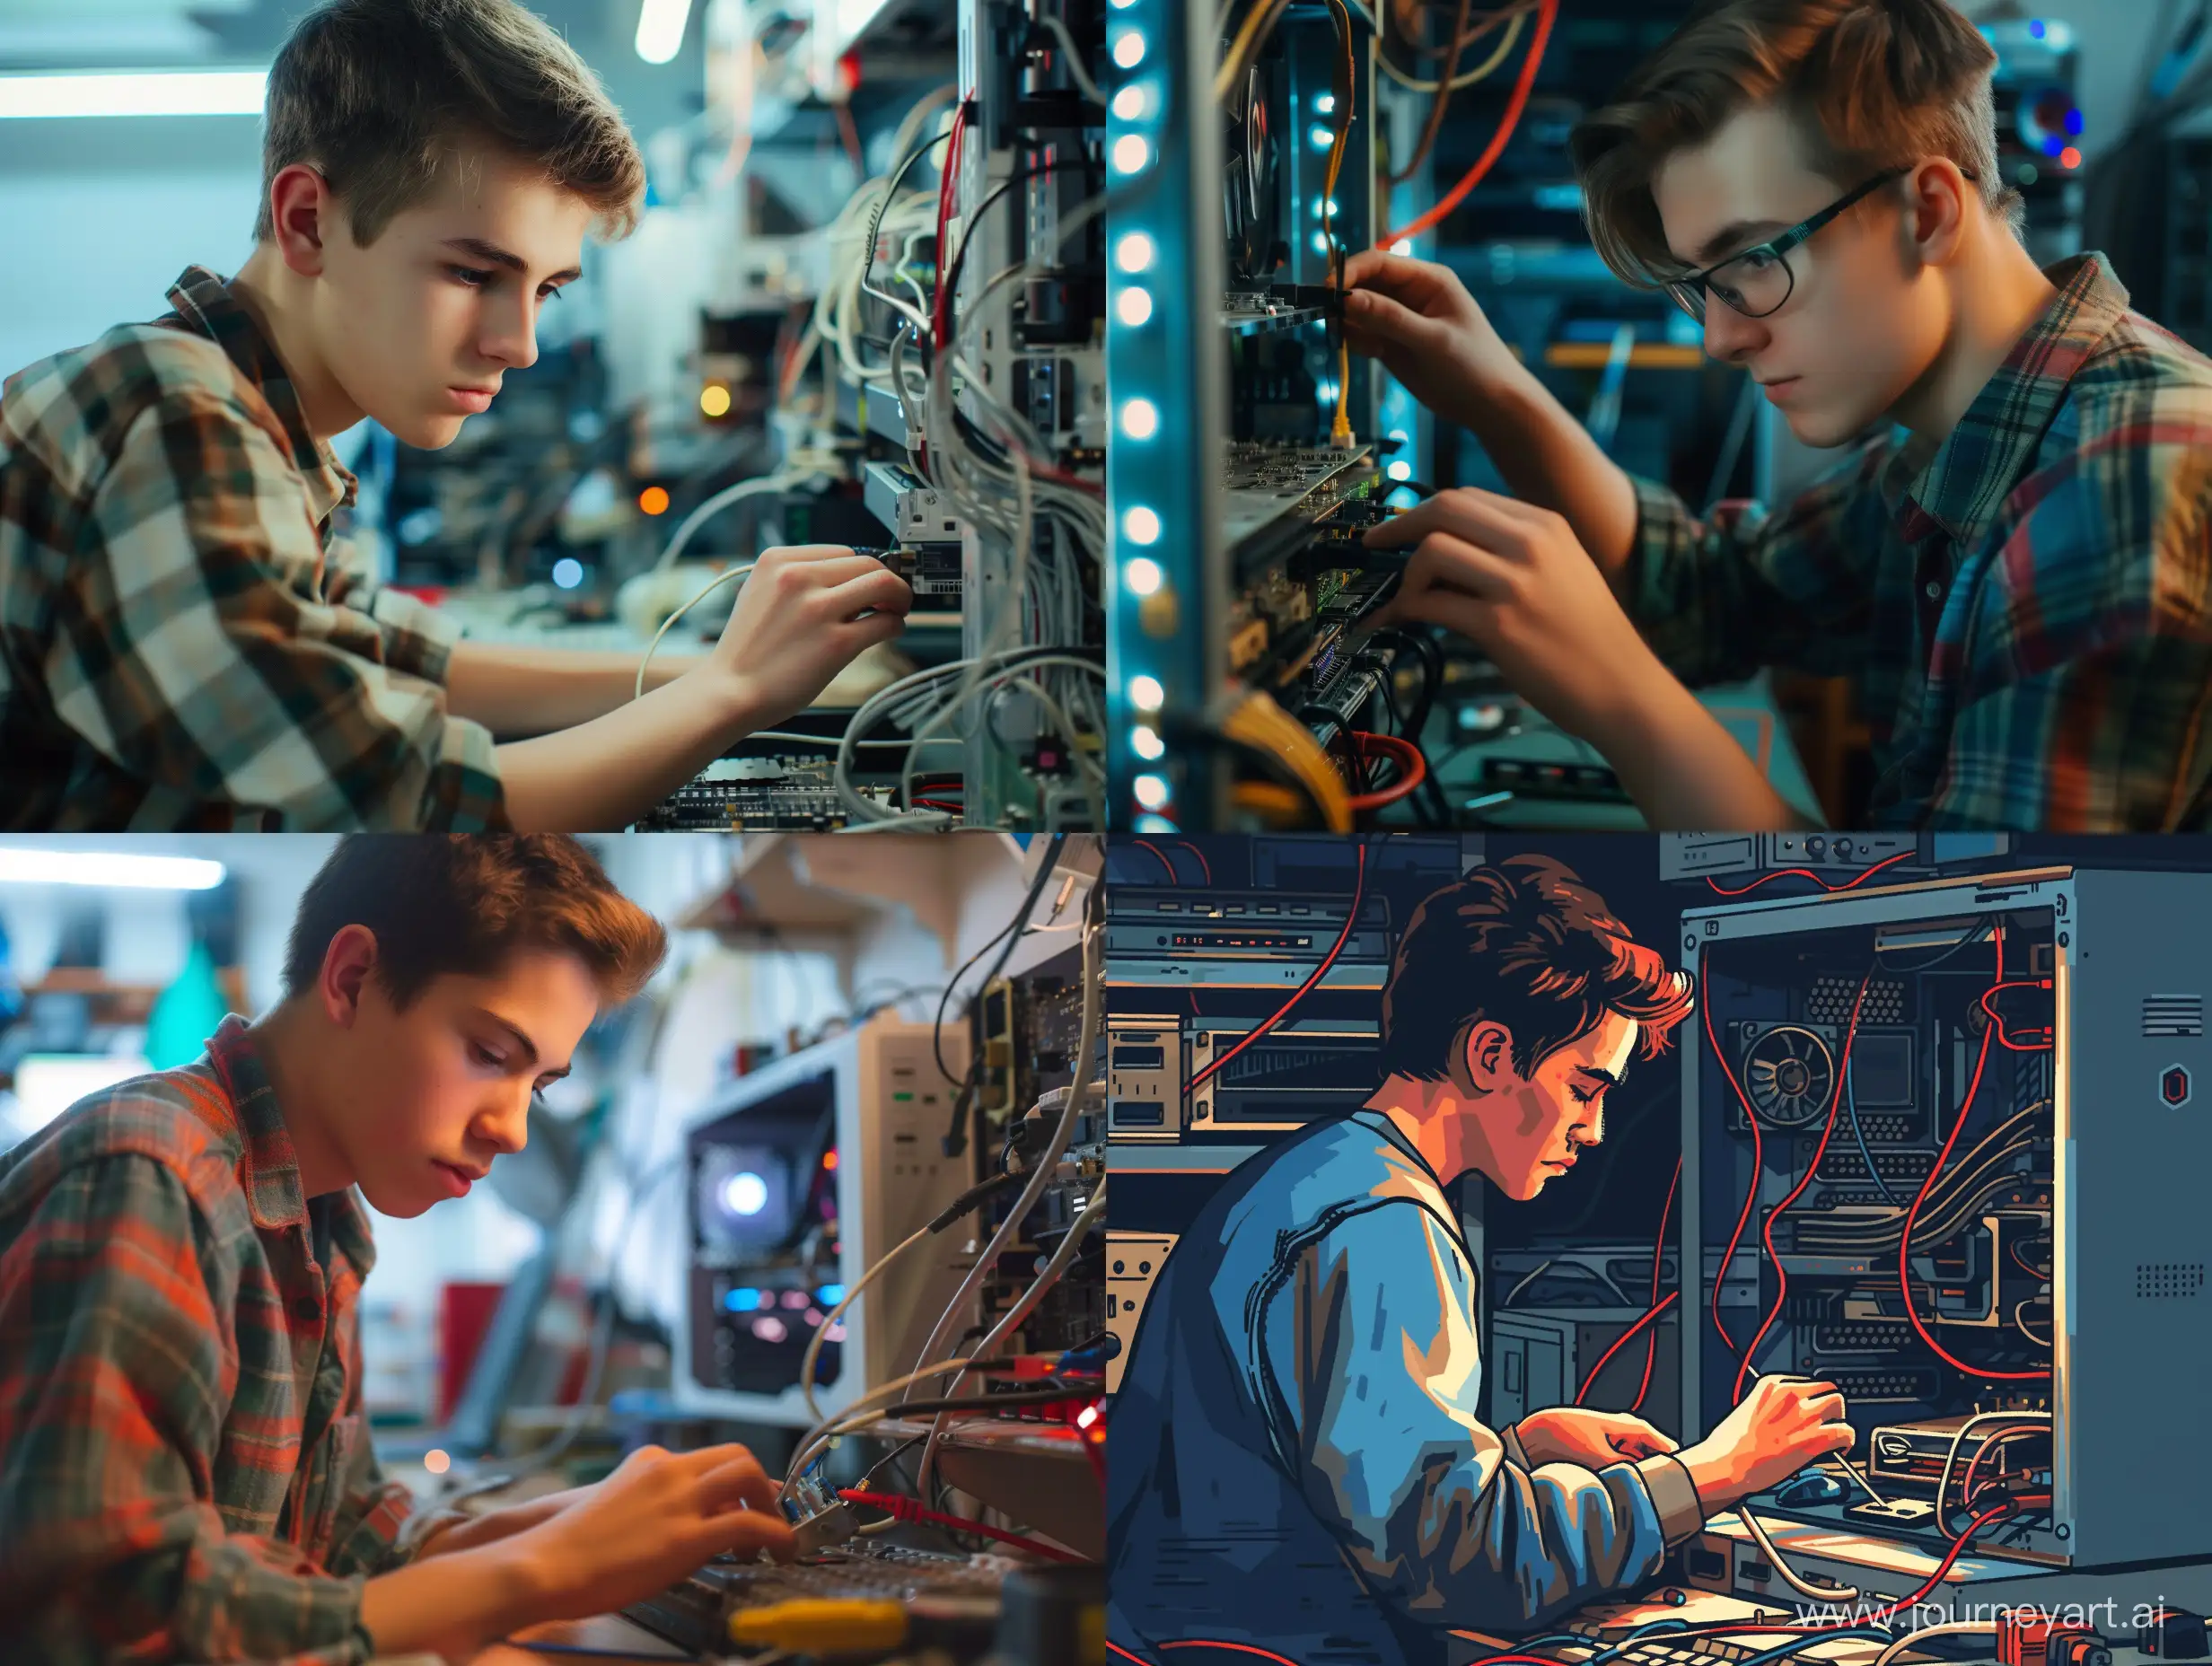 Молодой парень мастер своего дела, ремонтирует компьютер.